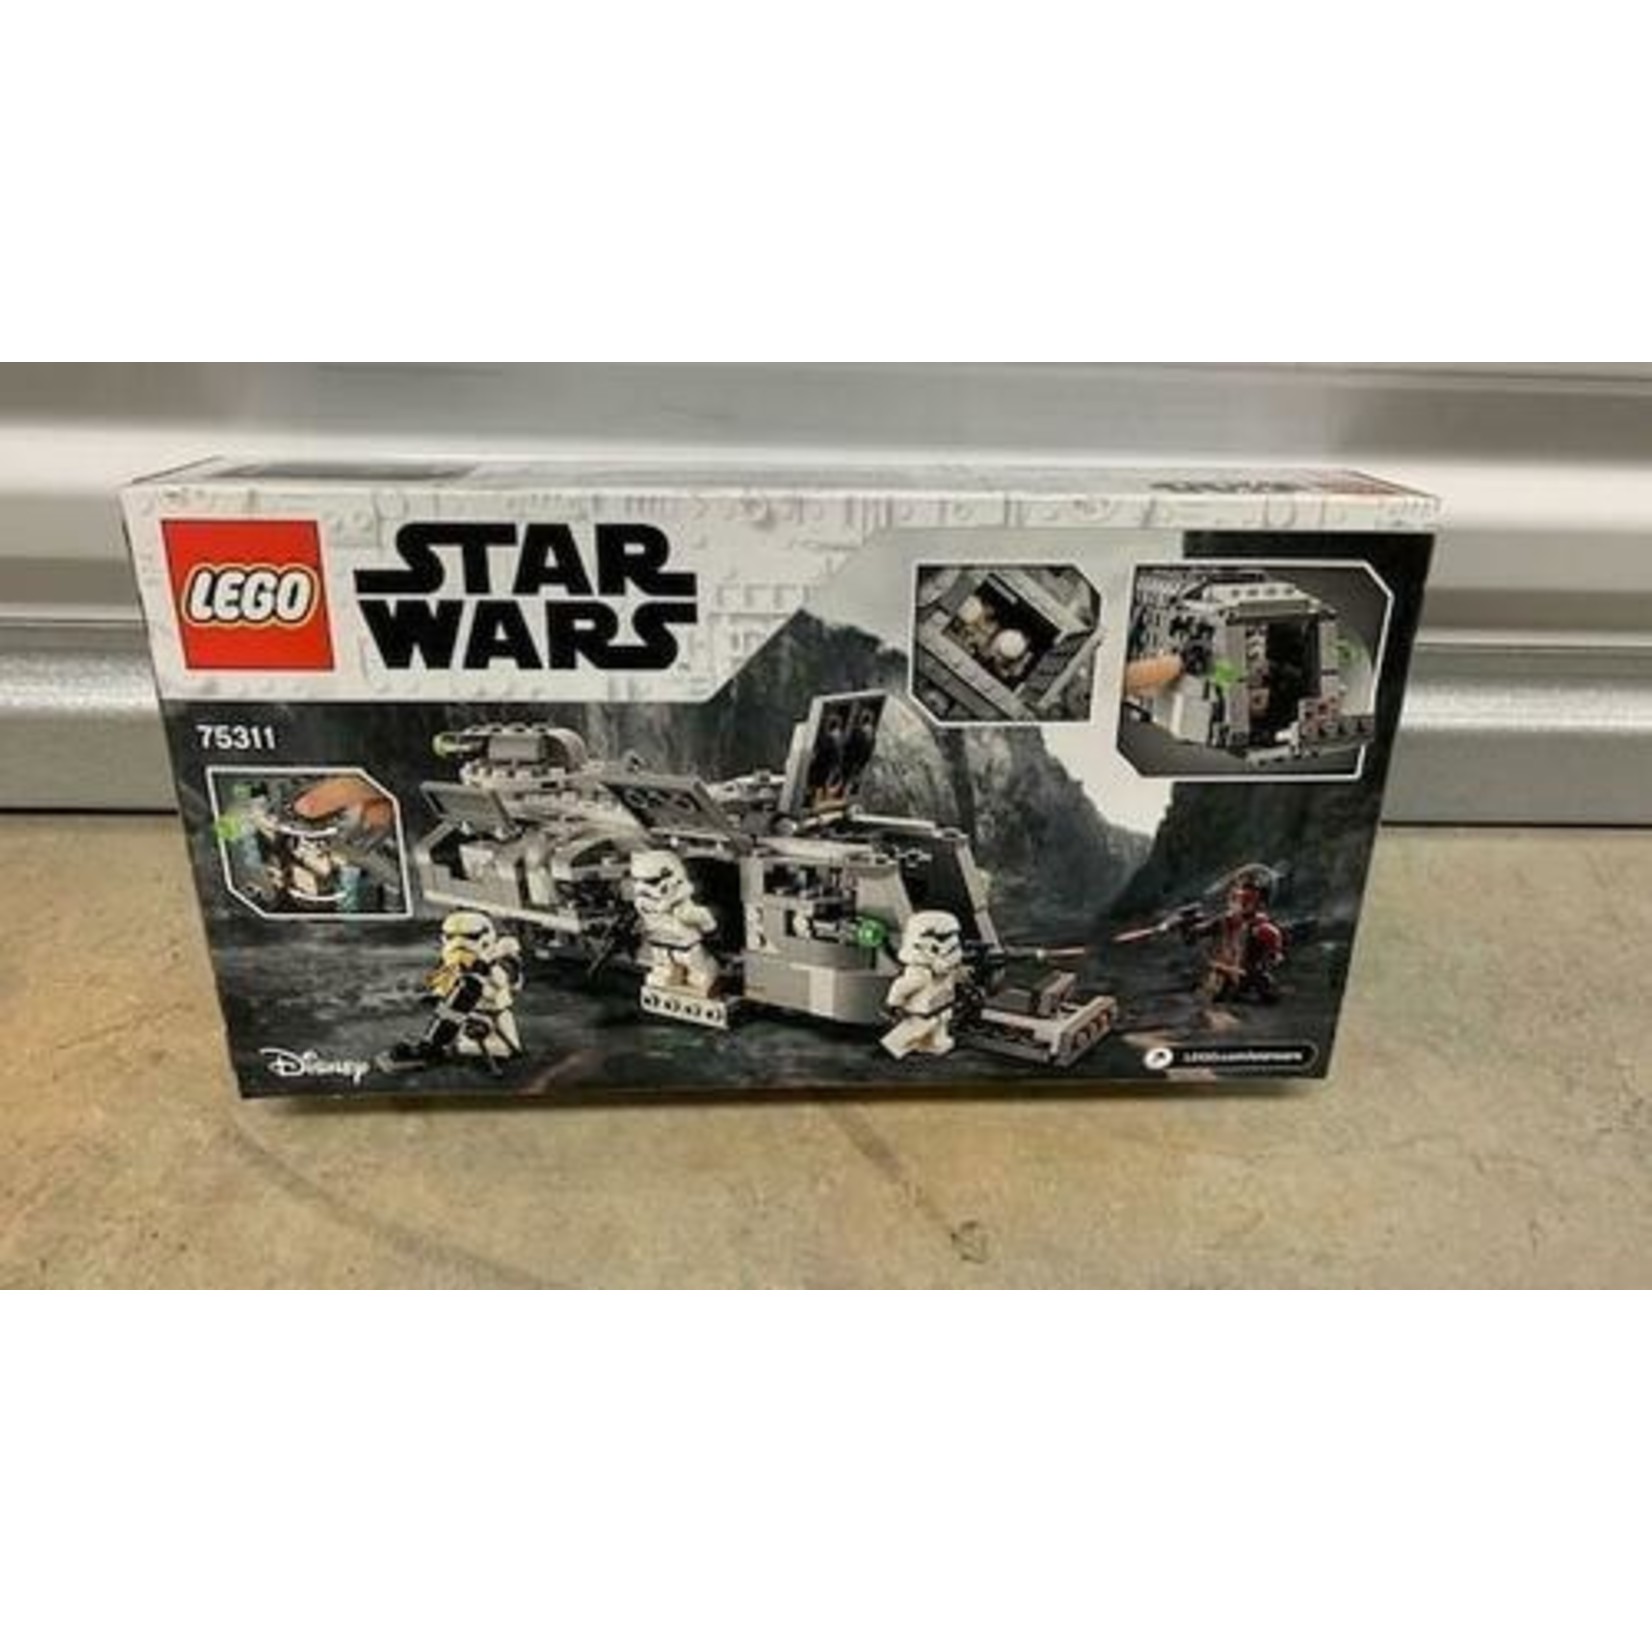 LEGO Lego Star Wars Imperial Armored Marauder 75311